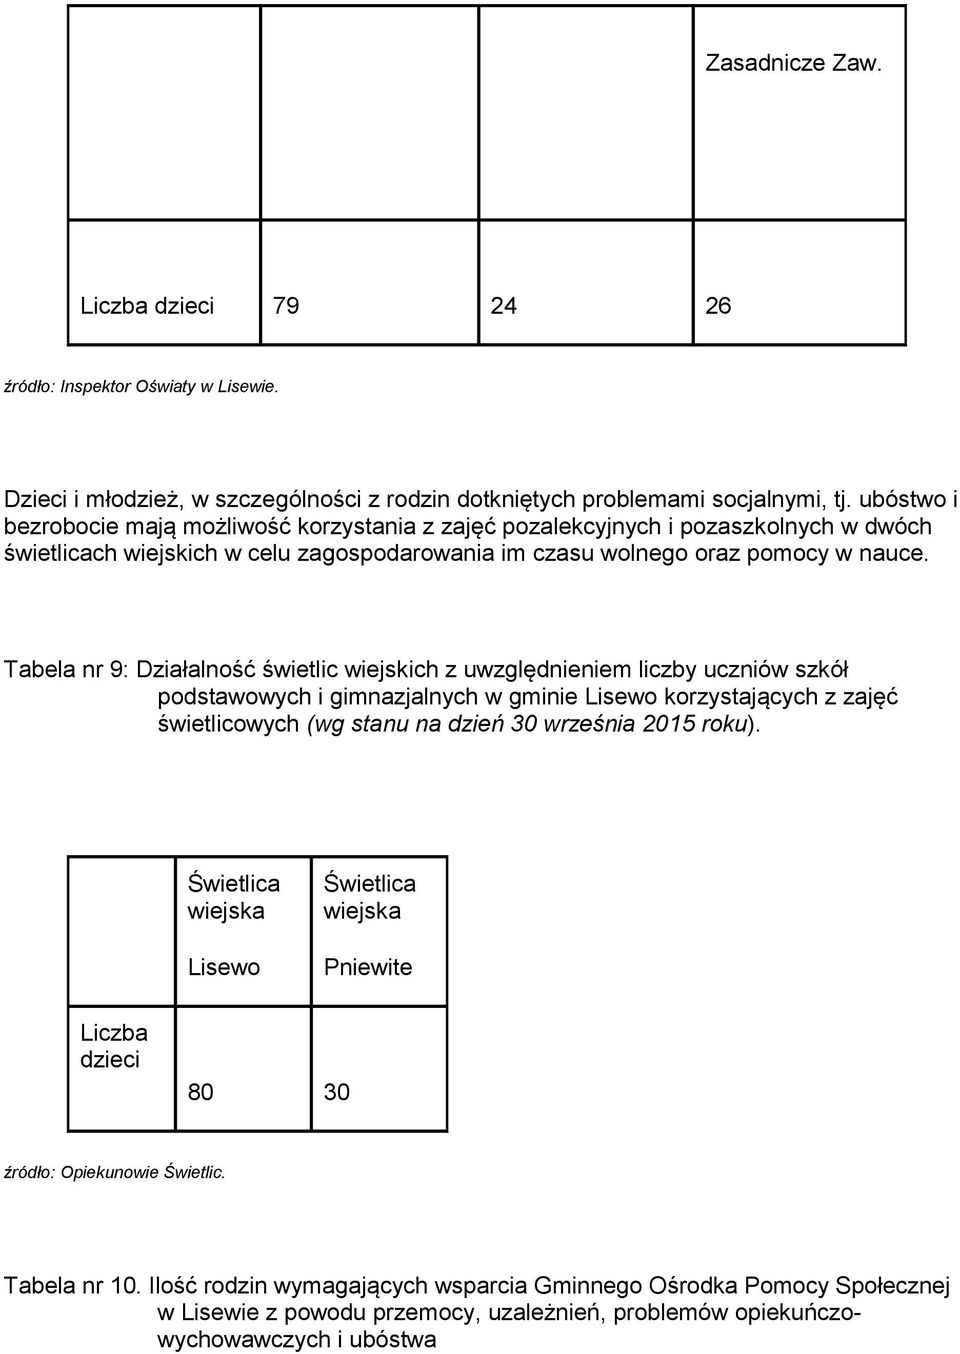 Tabela nr 9: Działalnść świetlic wiejskich z uwzględnieniem liczby uczniów szkół pdstawwych i gimnazjalnych w gminie Lisew krzystających z zajęć świetlicwych (wg stanu na dzień 30 września